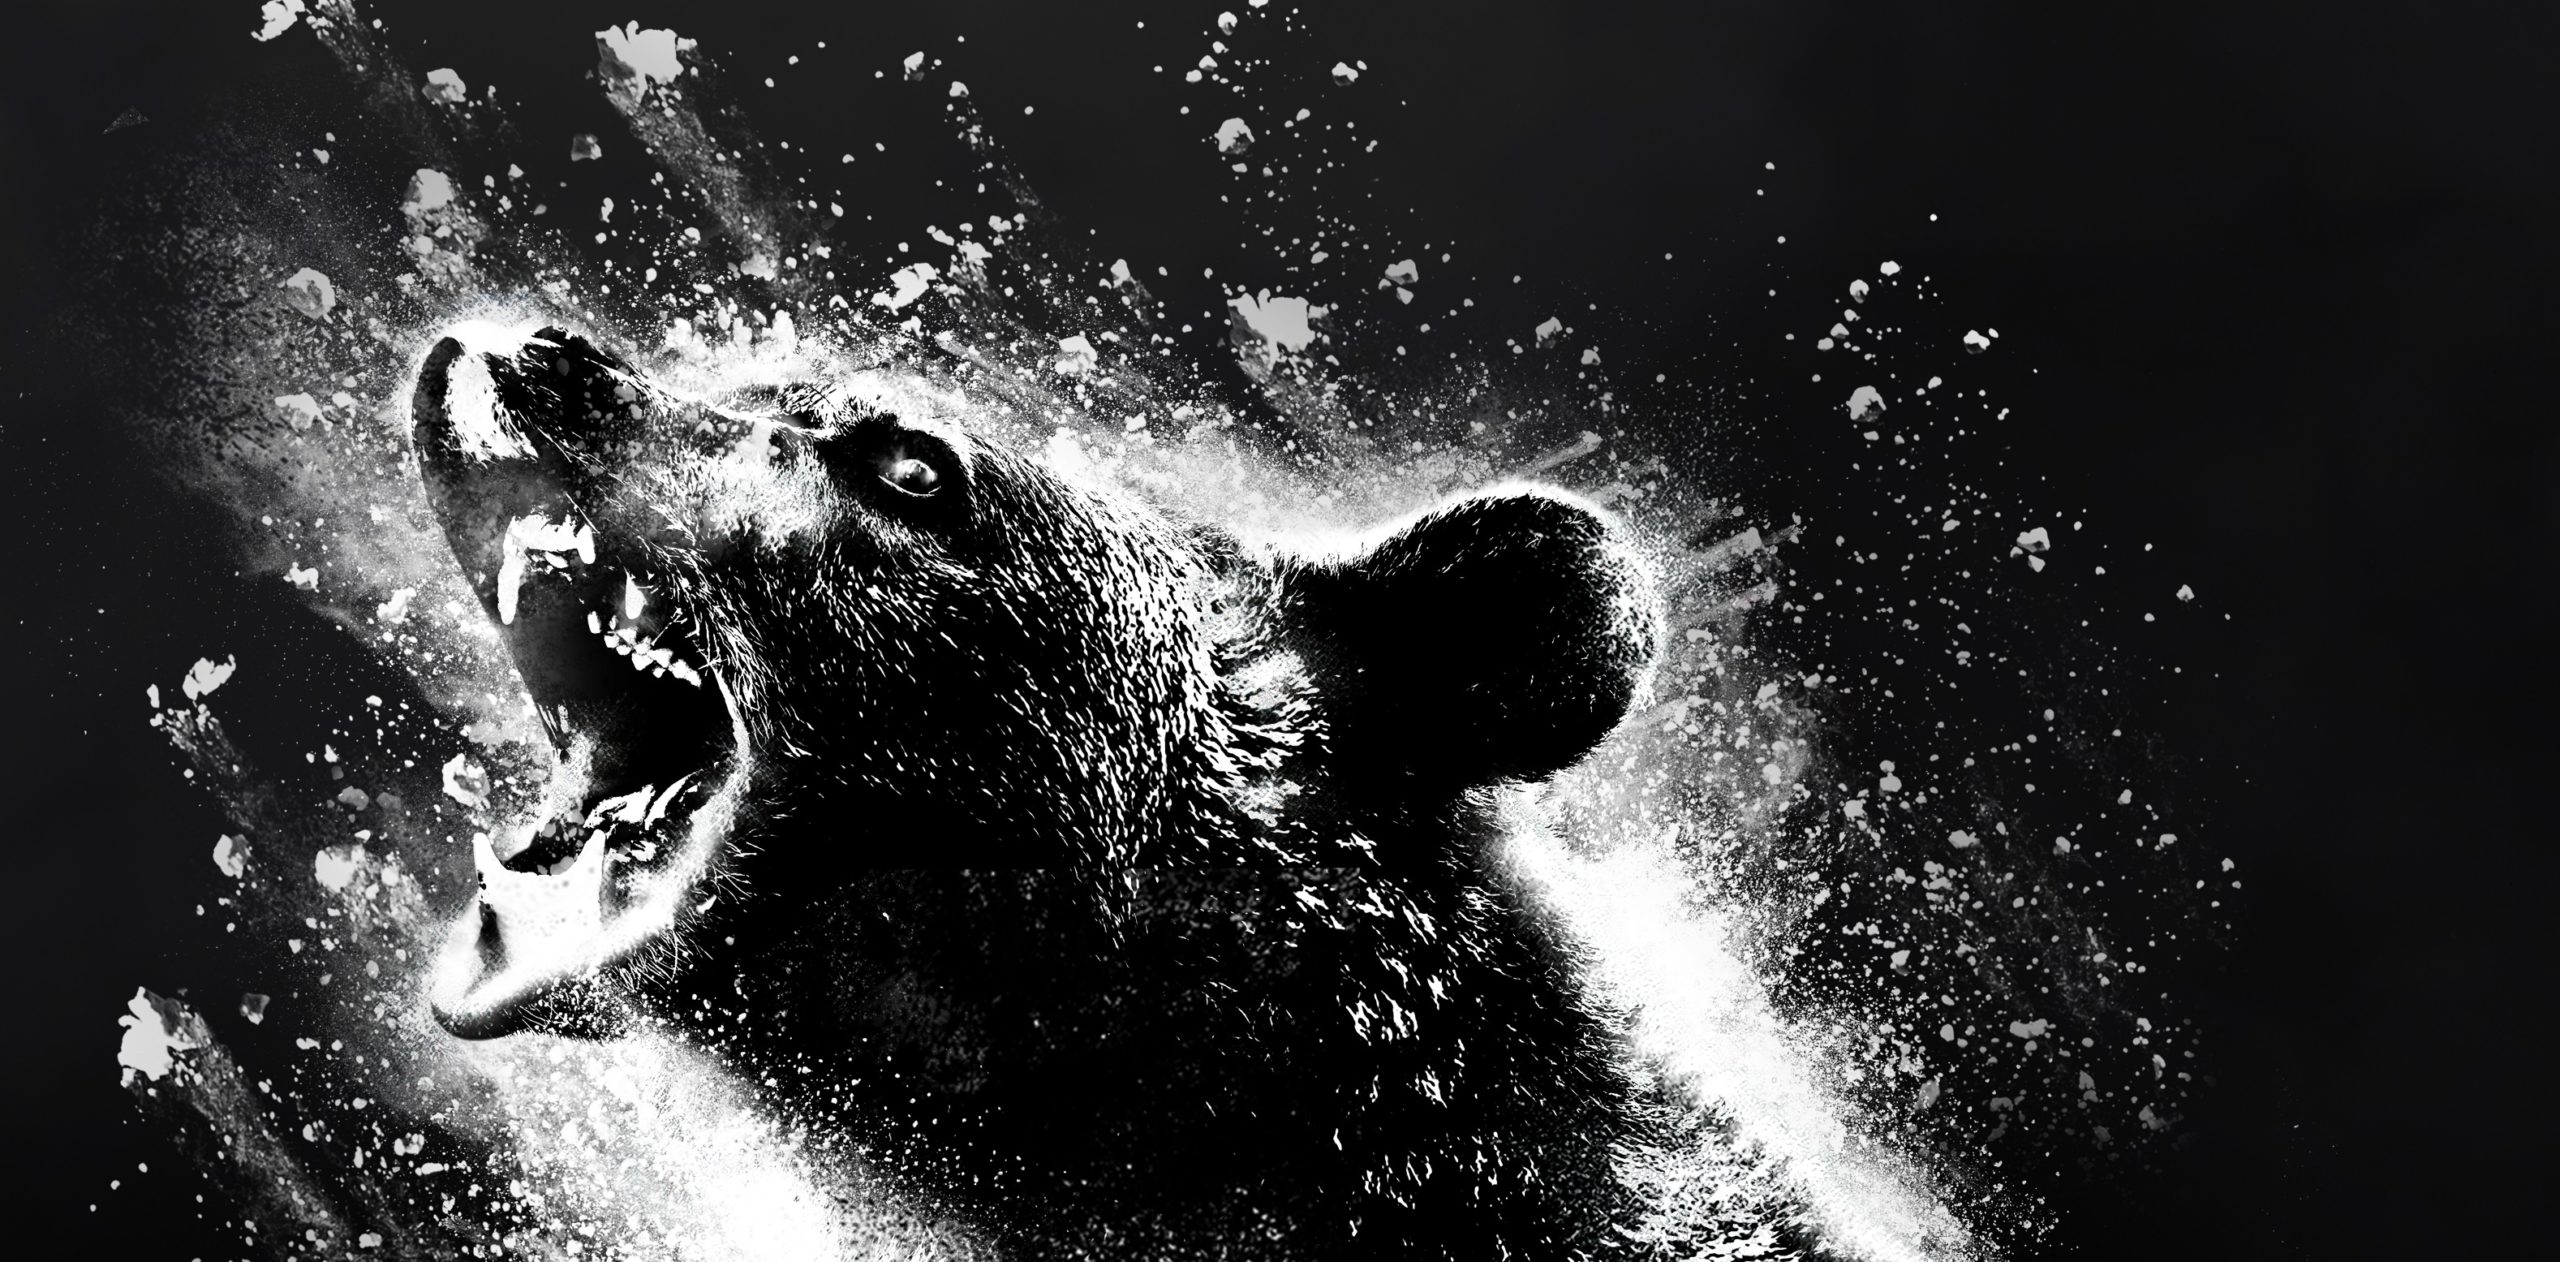 Cocaine Bear Trailer Has a Hyper-Drugged Animal on a Killing Spree